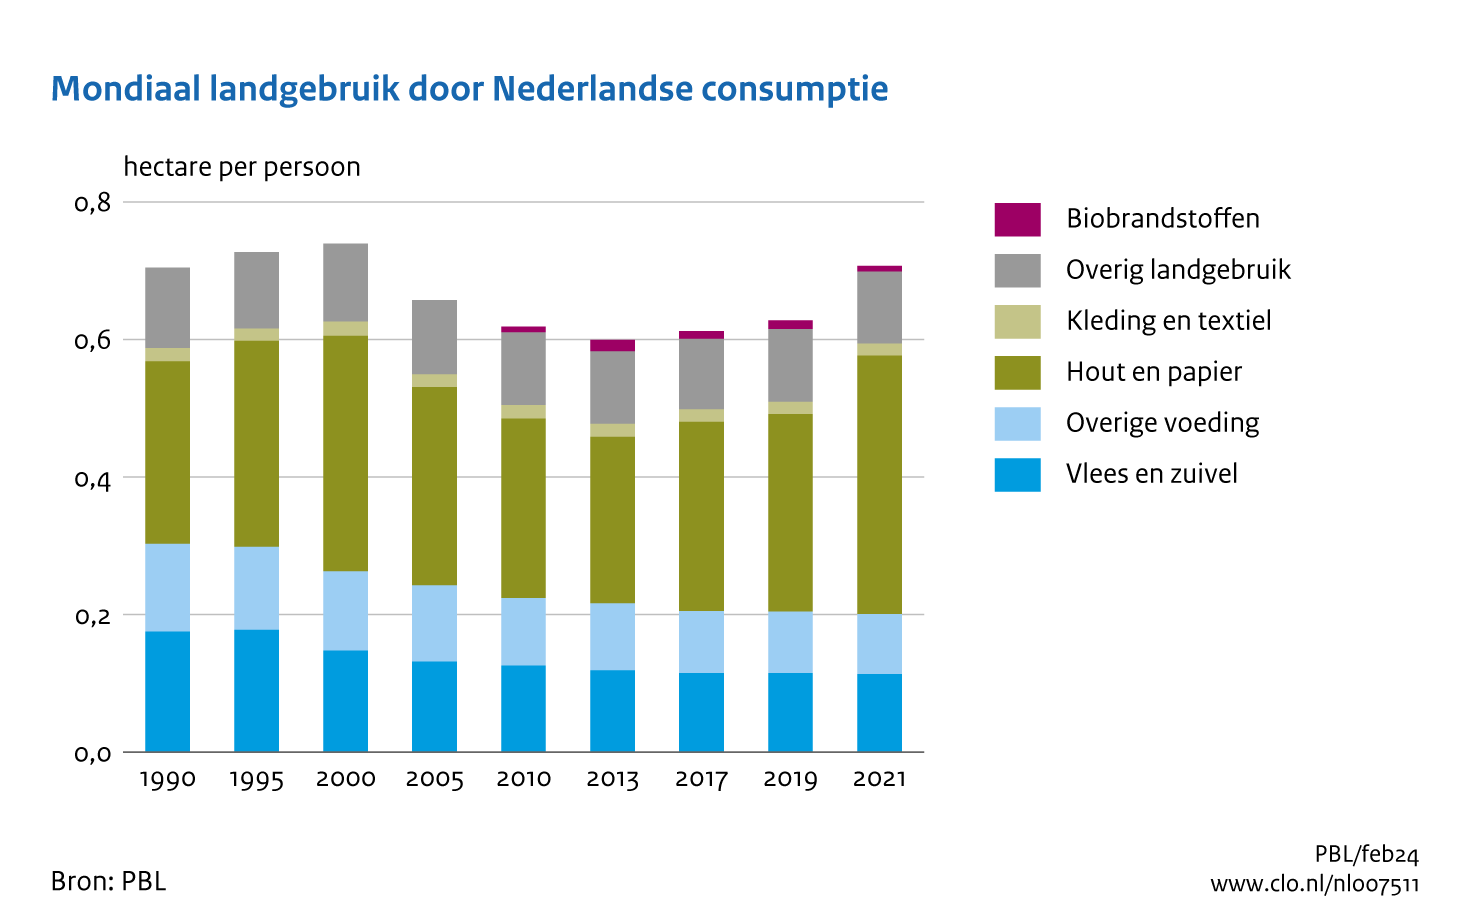 De totale Nederlandse landvoetafdruk in 2021 is hoger dan die in alle eerder berekende jaren in de periode 1990-2021. Ook per persoon daalde de voetafdruk sinds het jaar 2000, maar anno 2021 zit deze weer op hetzelfde niveau als in 1990 (ruim 0,7 hectare).